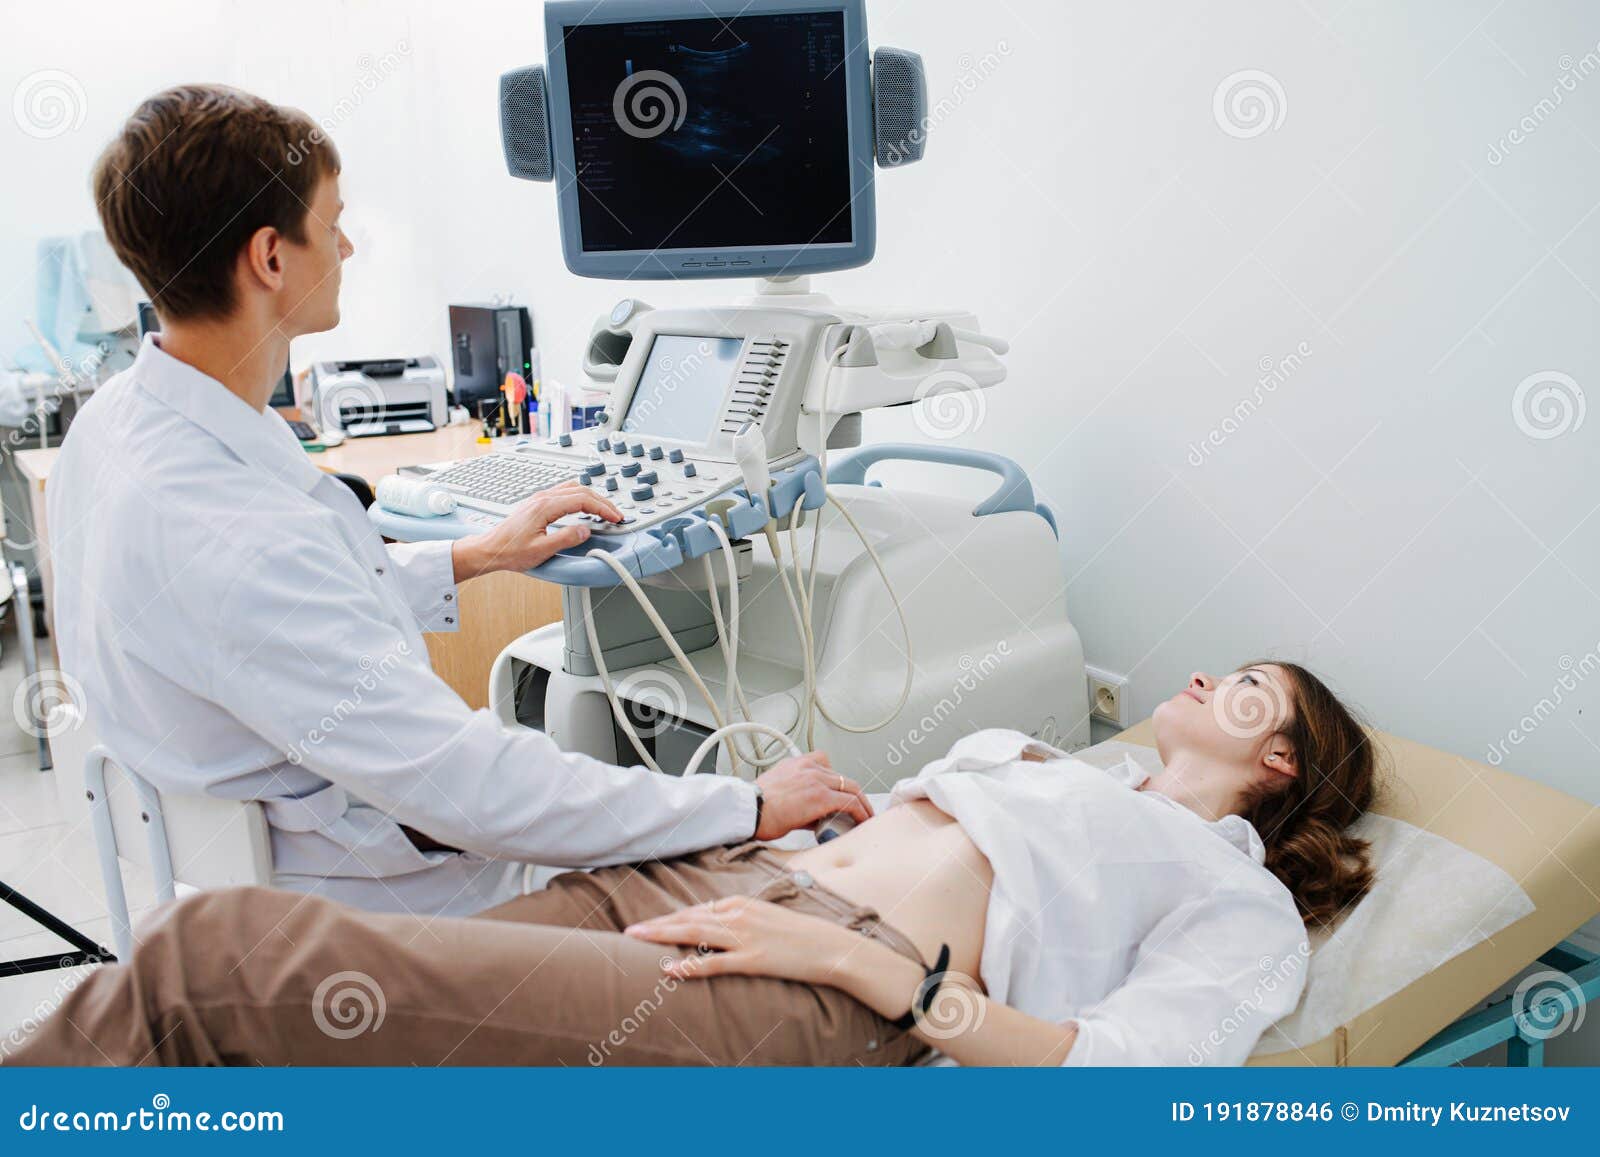 ultrasound specialist visit